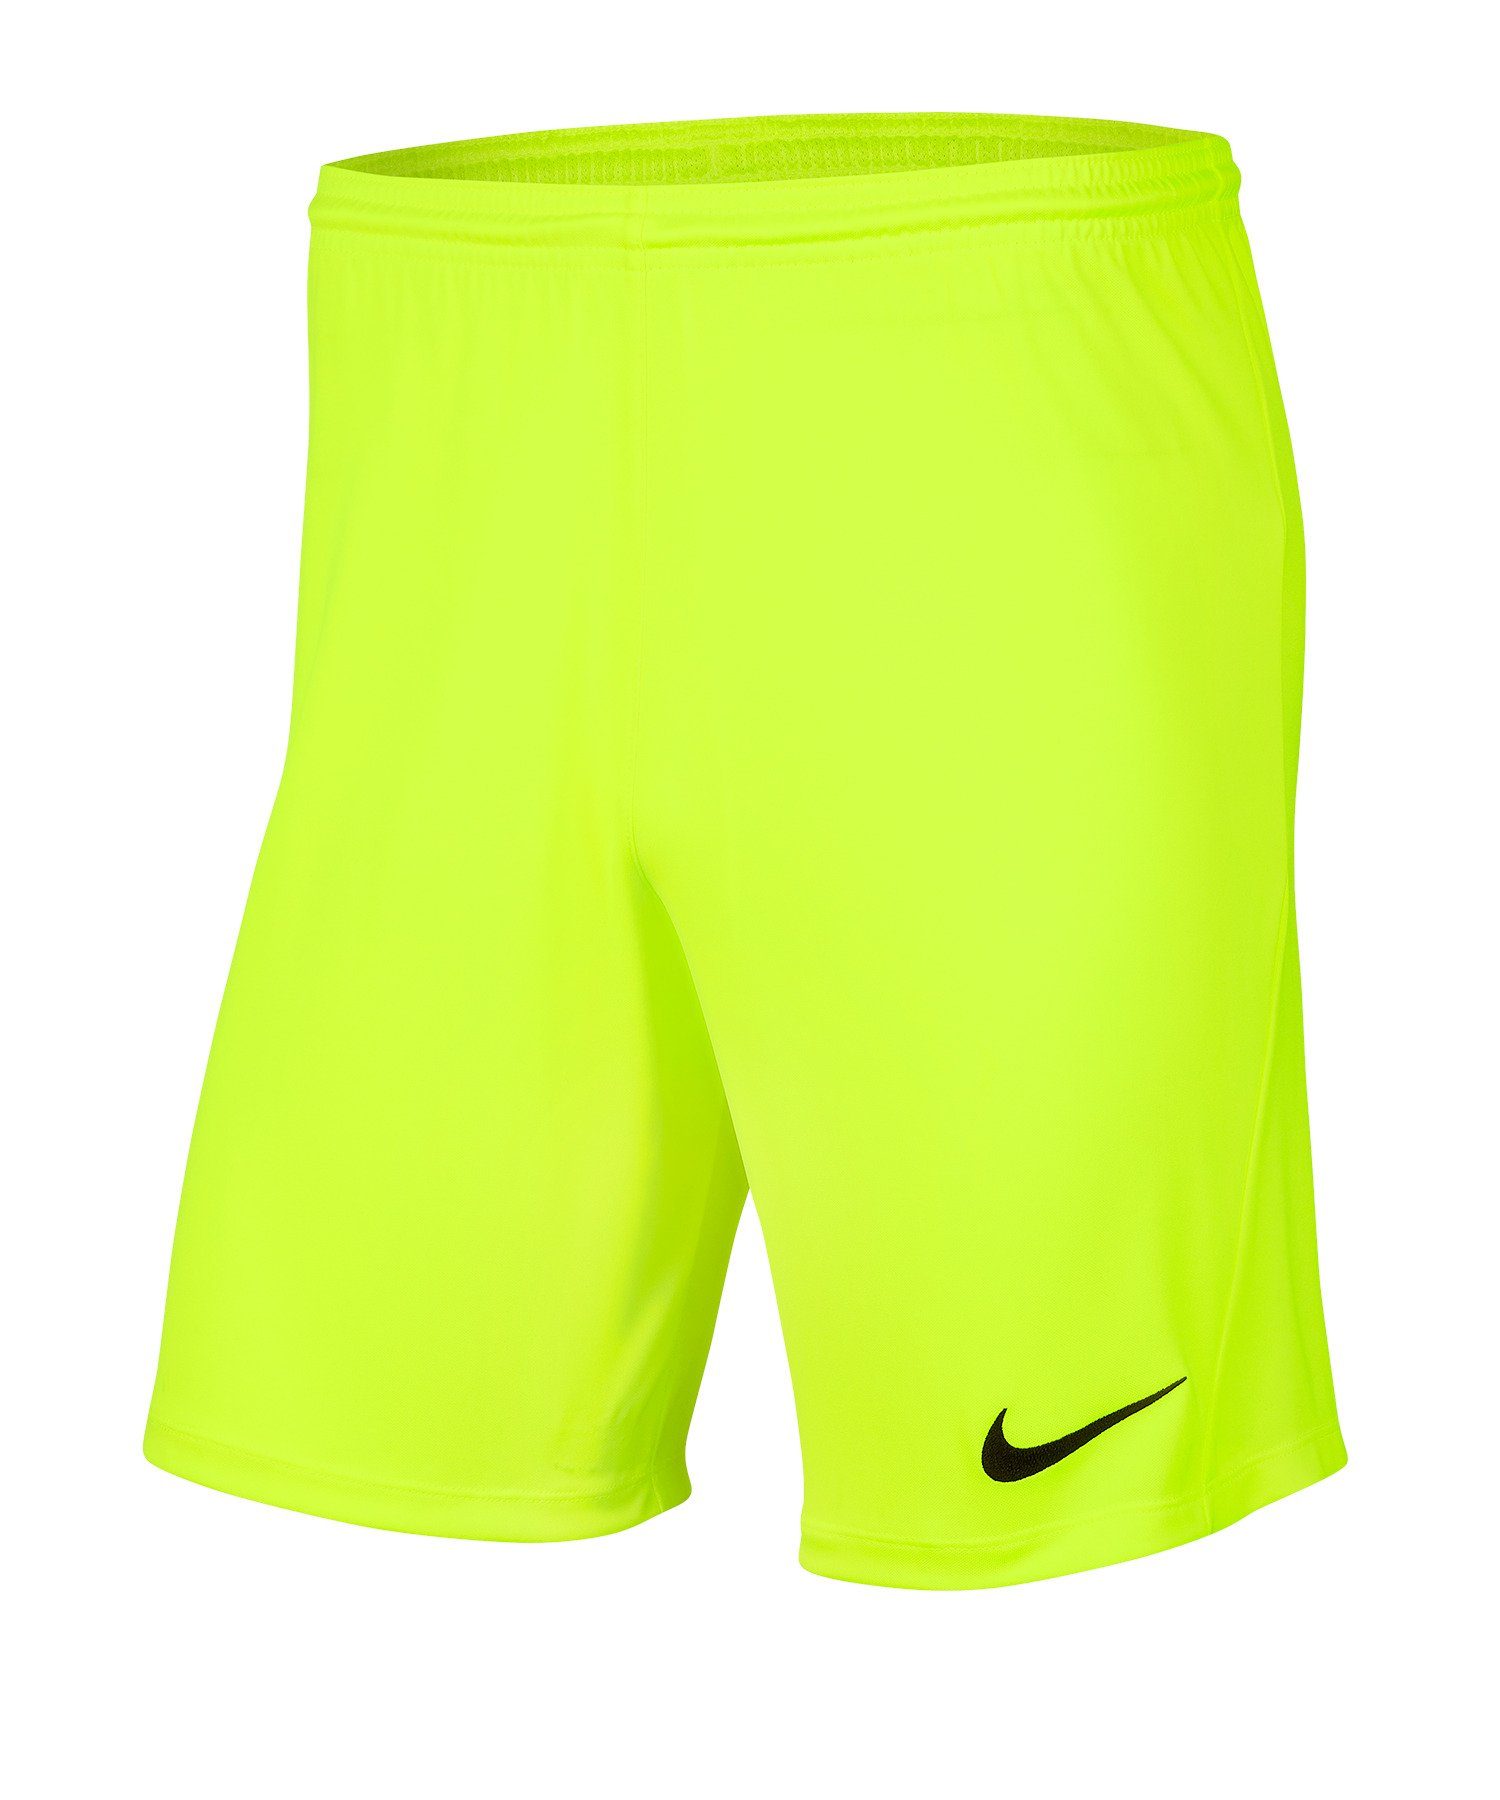 Nike Sporthose Park III Short gelb | Turnhosen